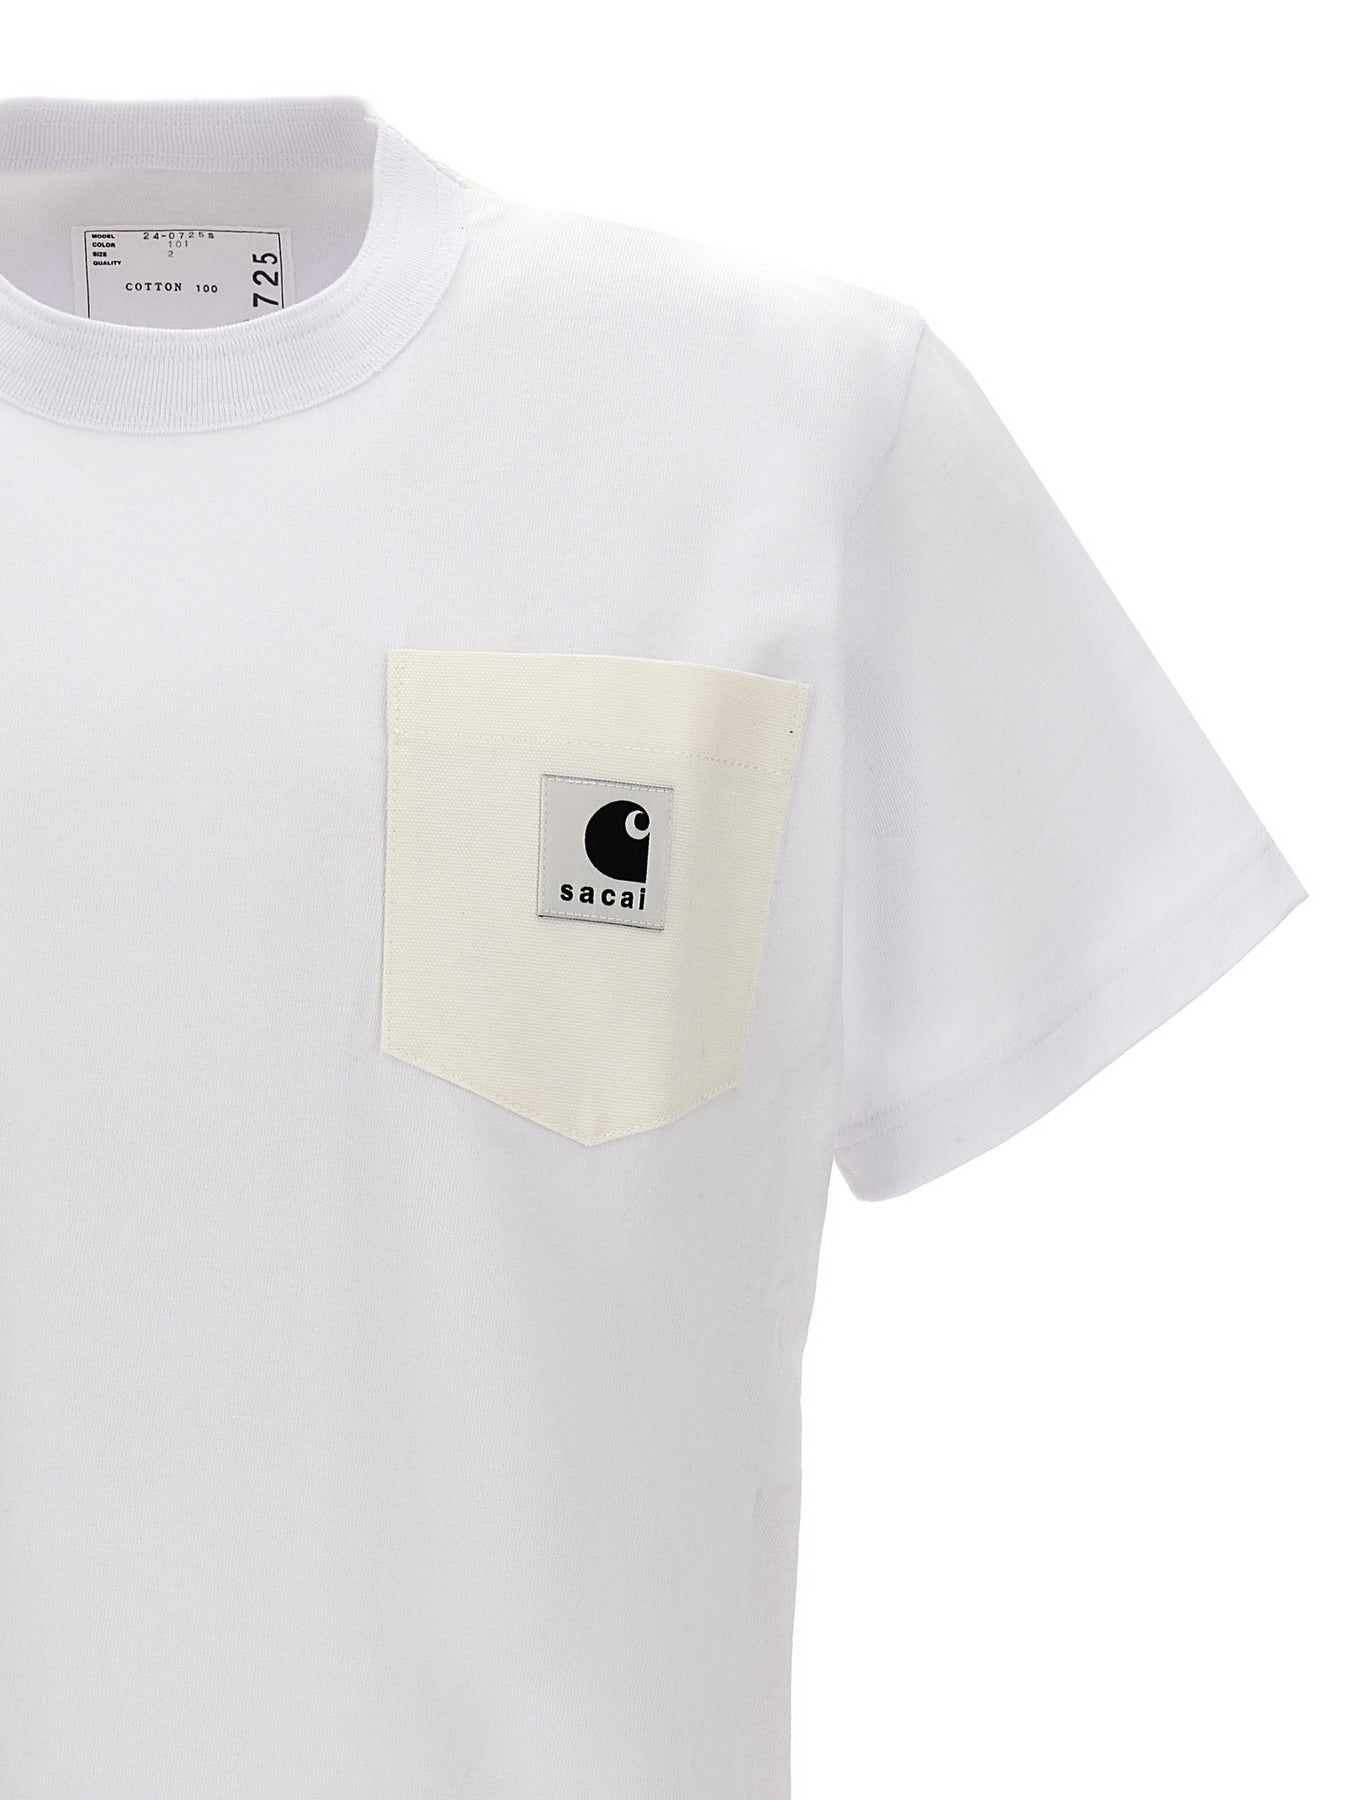 Sacai X Carhartt Wip T-Shirt White - 4